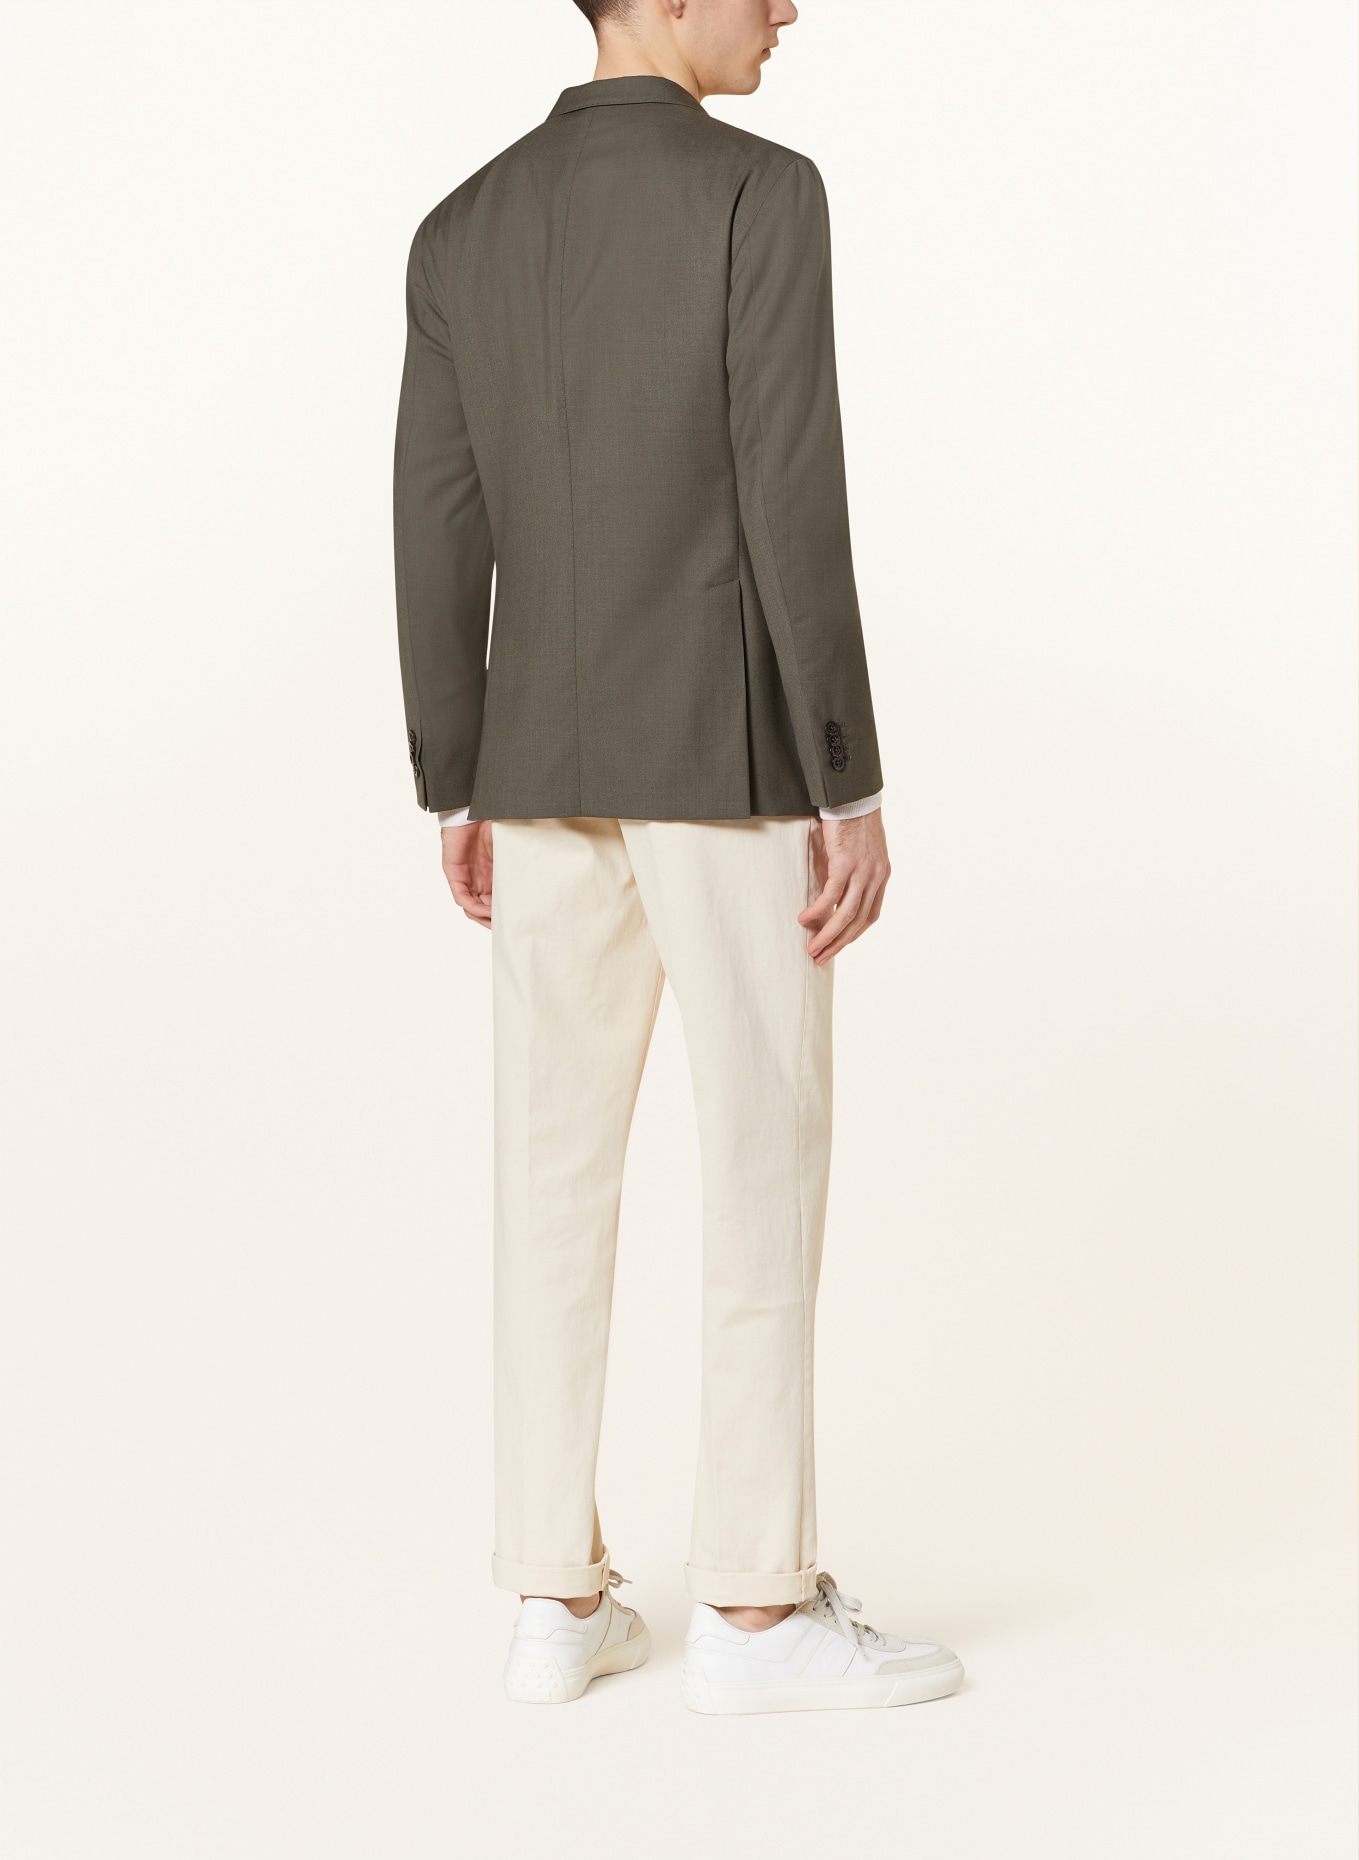 BOGLIOLI Tailored jacket slim fit, Color: OLIVE (Image 3)